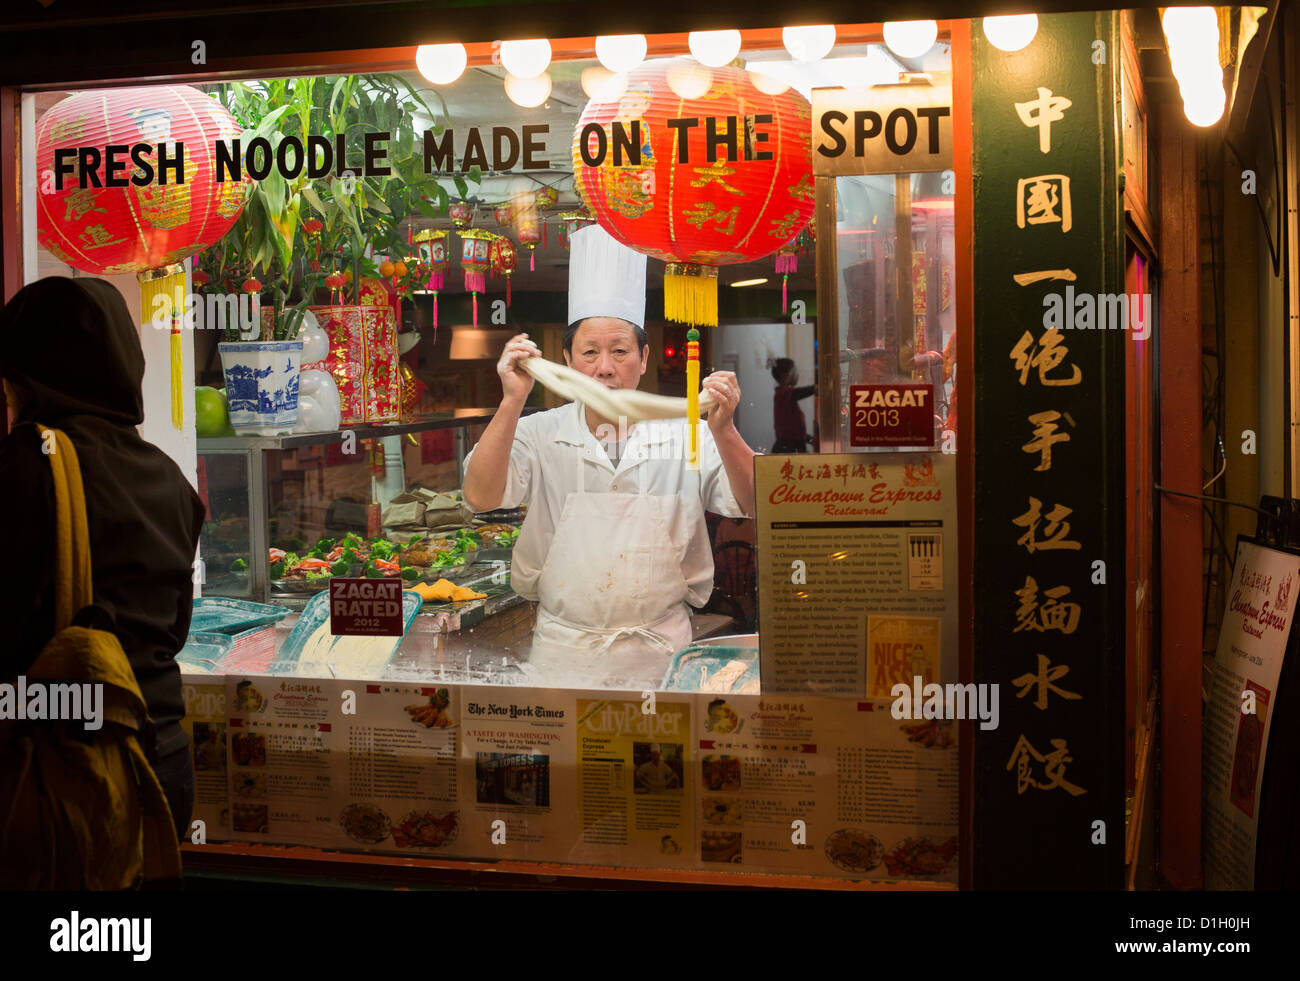 Washington, DC - un lavoratore rende tagliatelle in Chinatown Express, un ristorante Cinese di Washington del quartiere Chinatown. Foto Stock